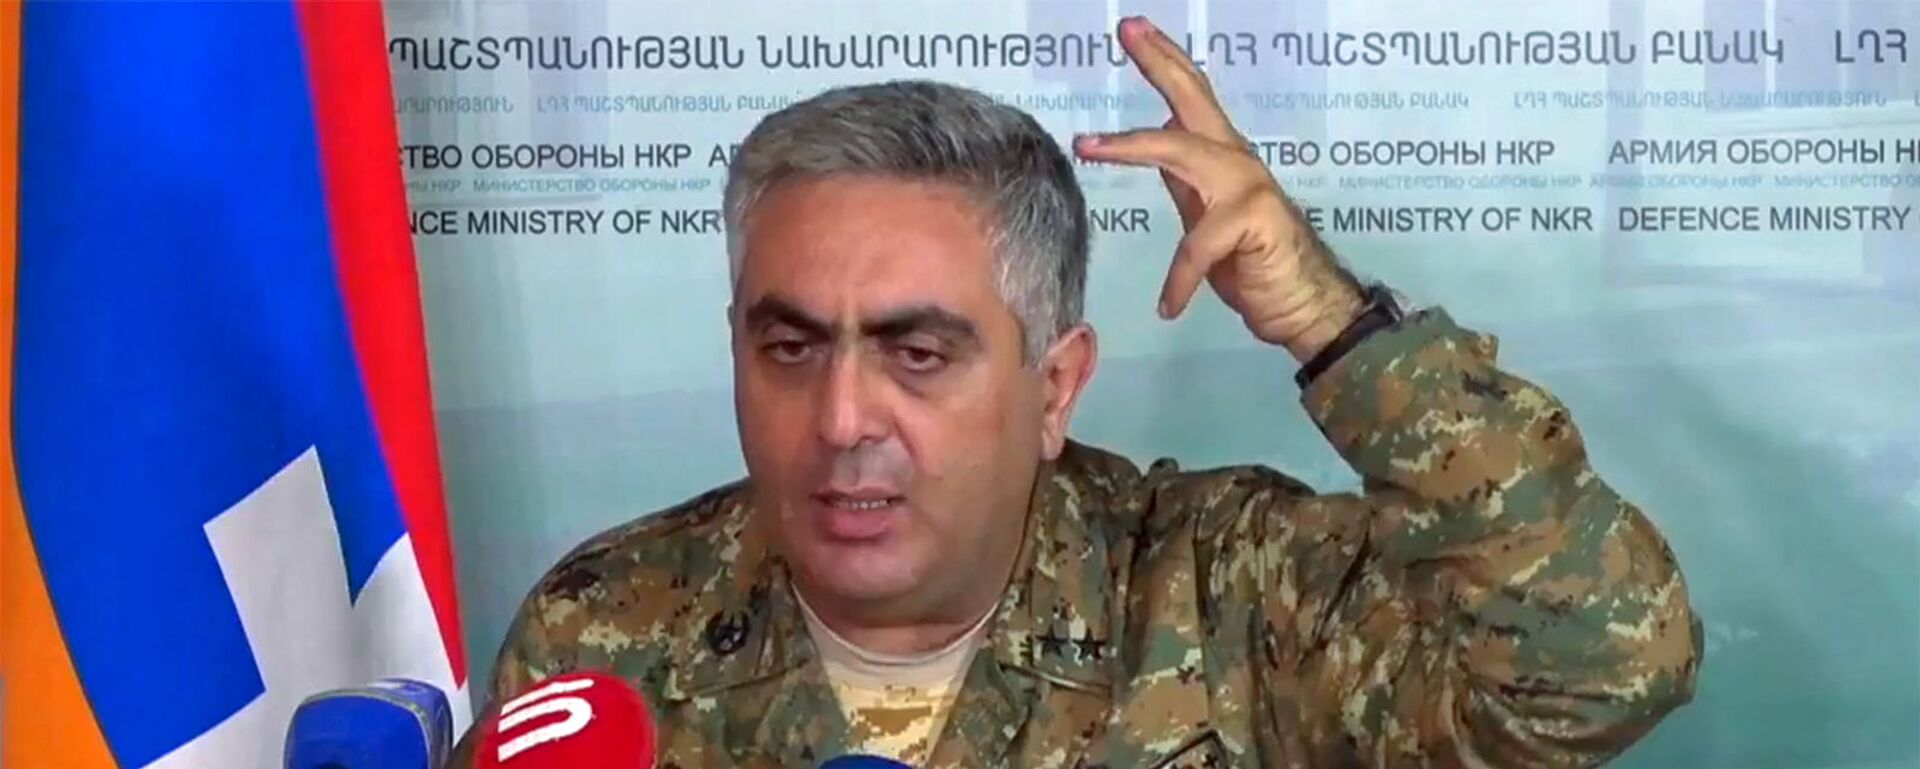 Представитель министерства обороны Армении Арцрун Ованнисян во время брифинга в информационном центре Карабаха (4 ноября 2020). Карабах - Sputnik Արմենիա, 1920, 01.02.2021